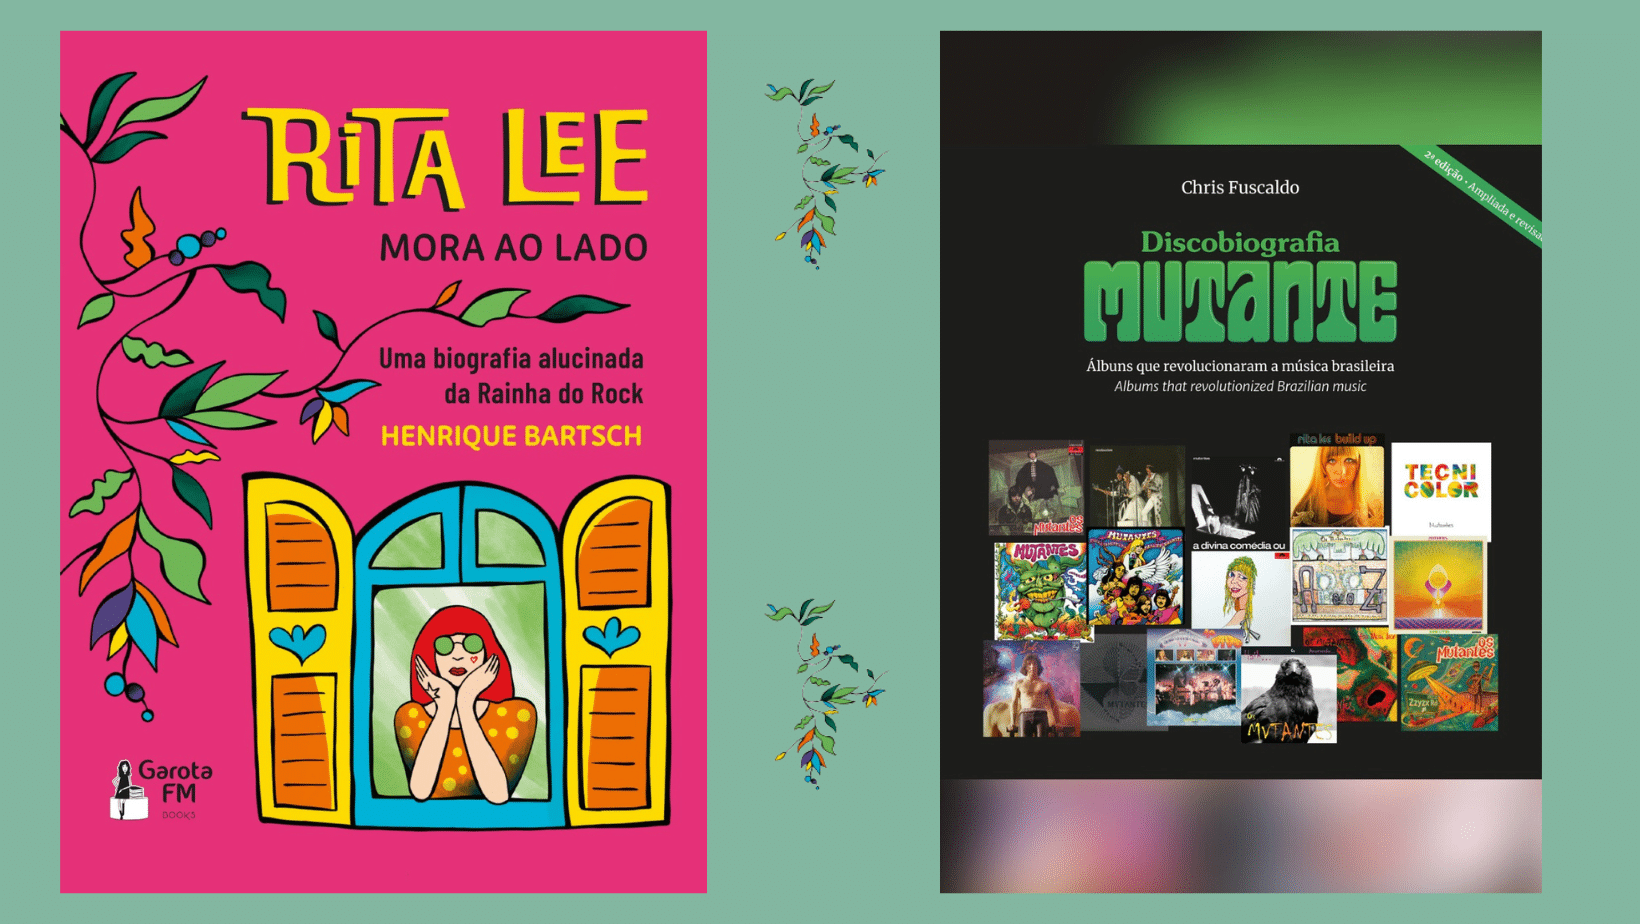 revistaprosaversoearte.com - Garota FM Books relança dois livros para homenagear Rita Lee em maio